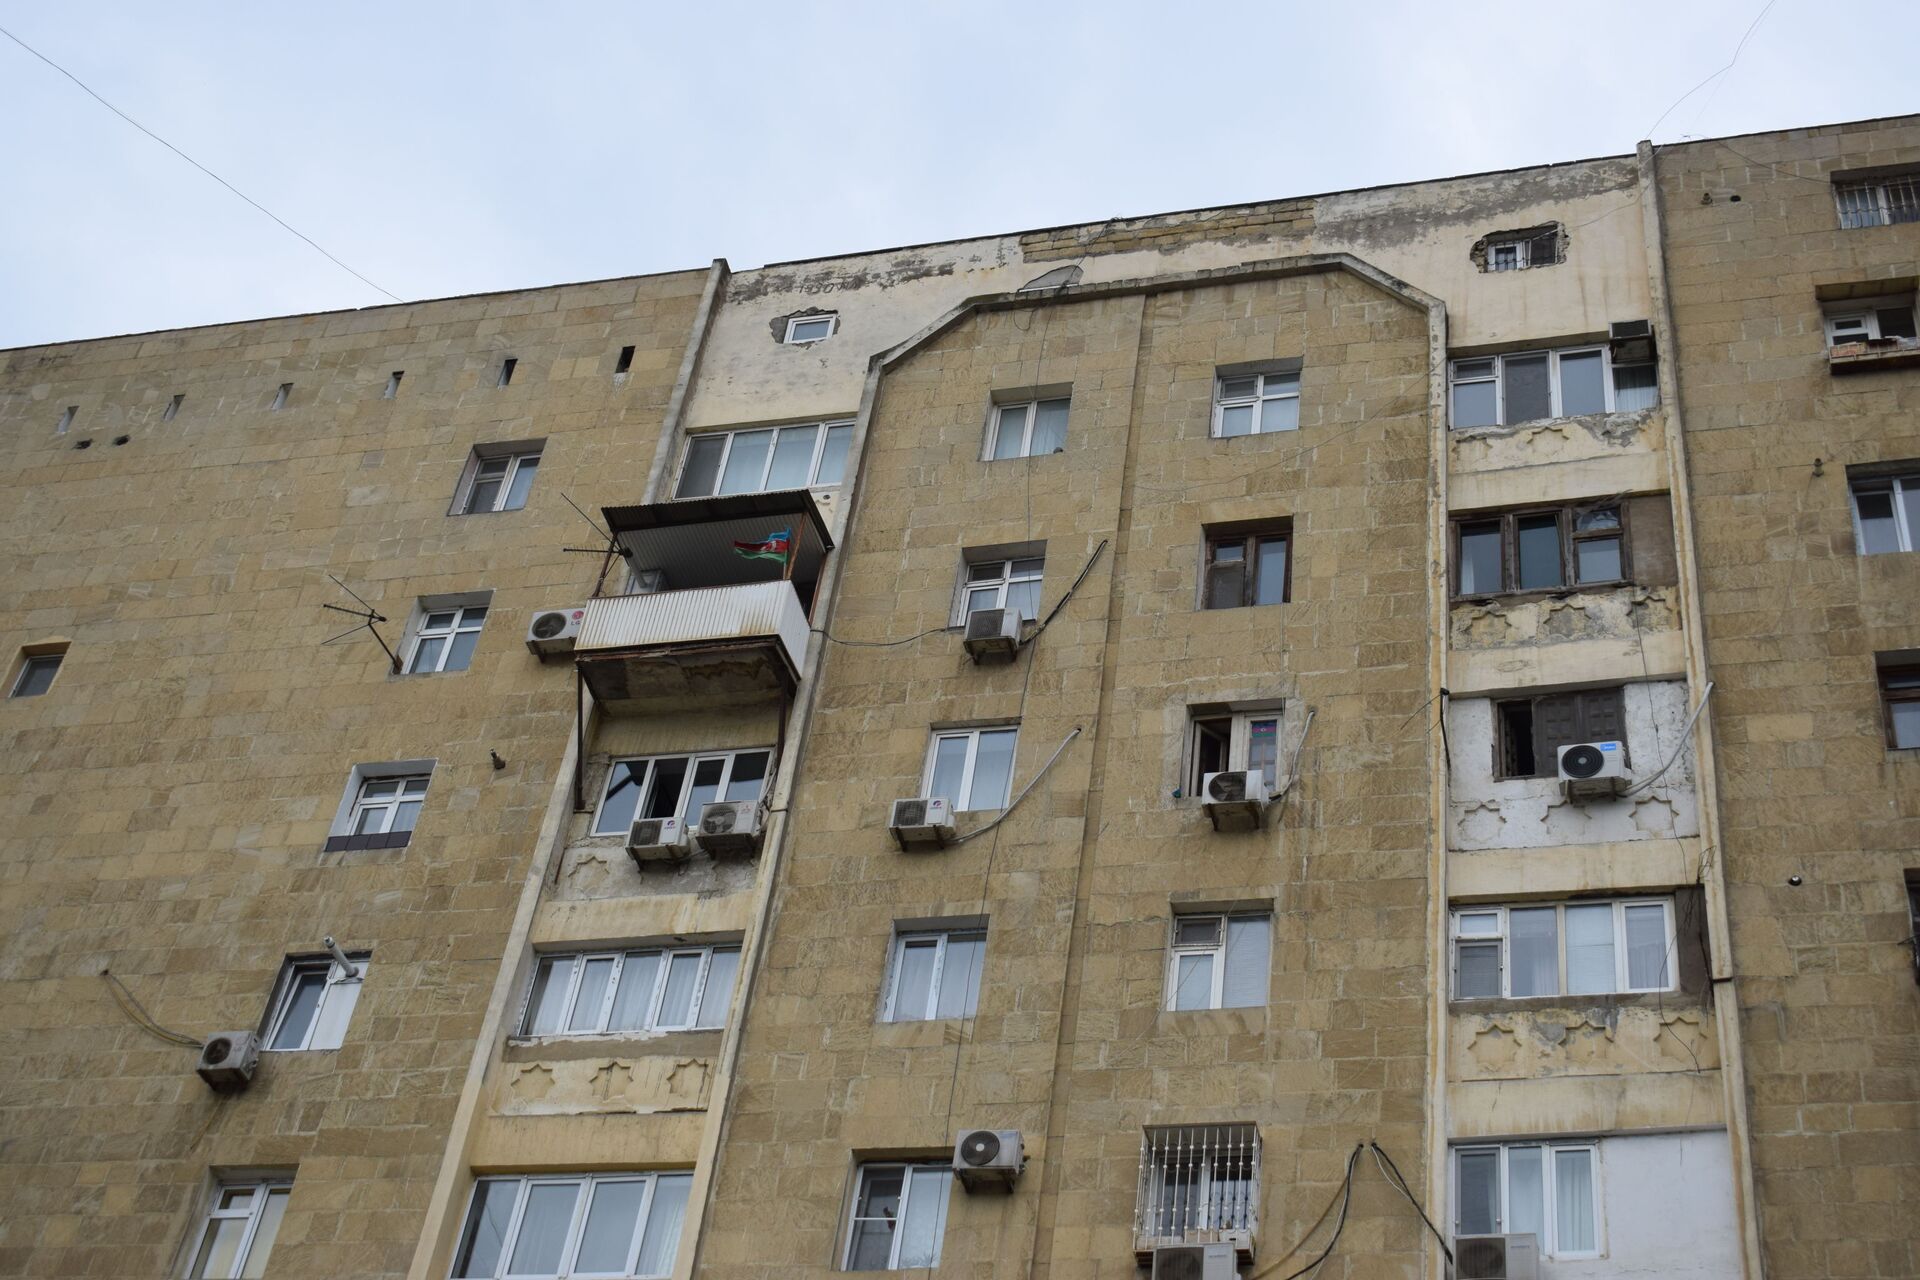 Bakıda göydən daş yağır: Aqlaylı binalar ölüm saçır - FOTO - Sputnik Azərbaycan, 1920, 06.05.2021